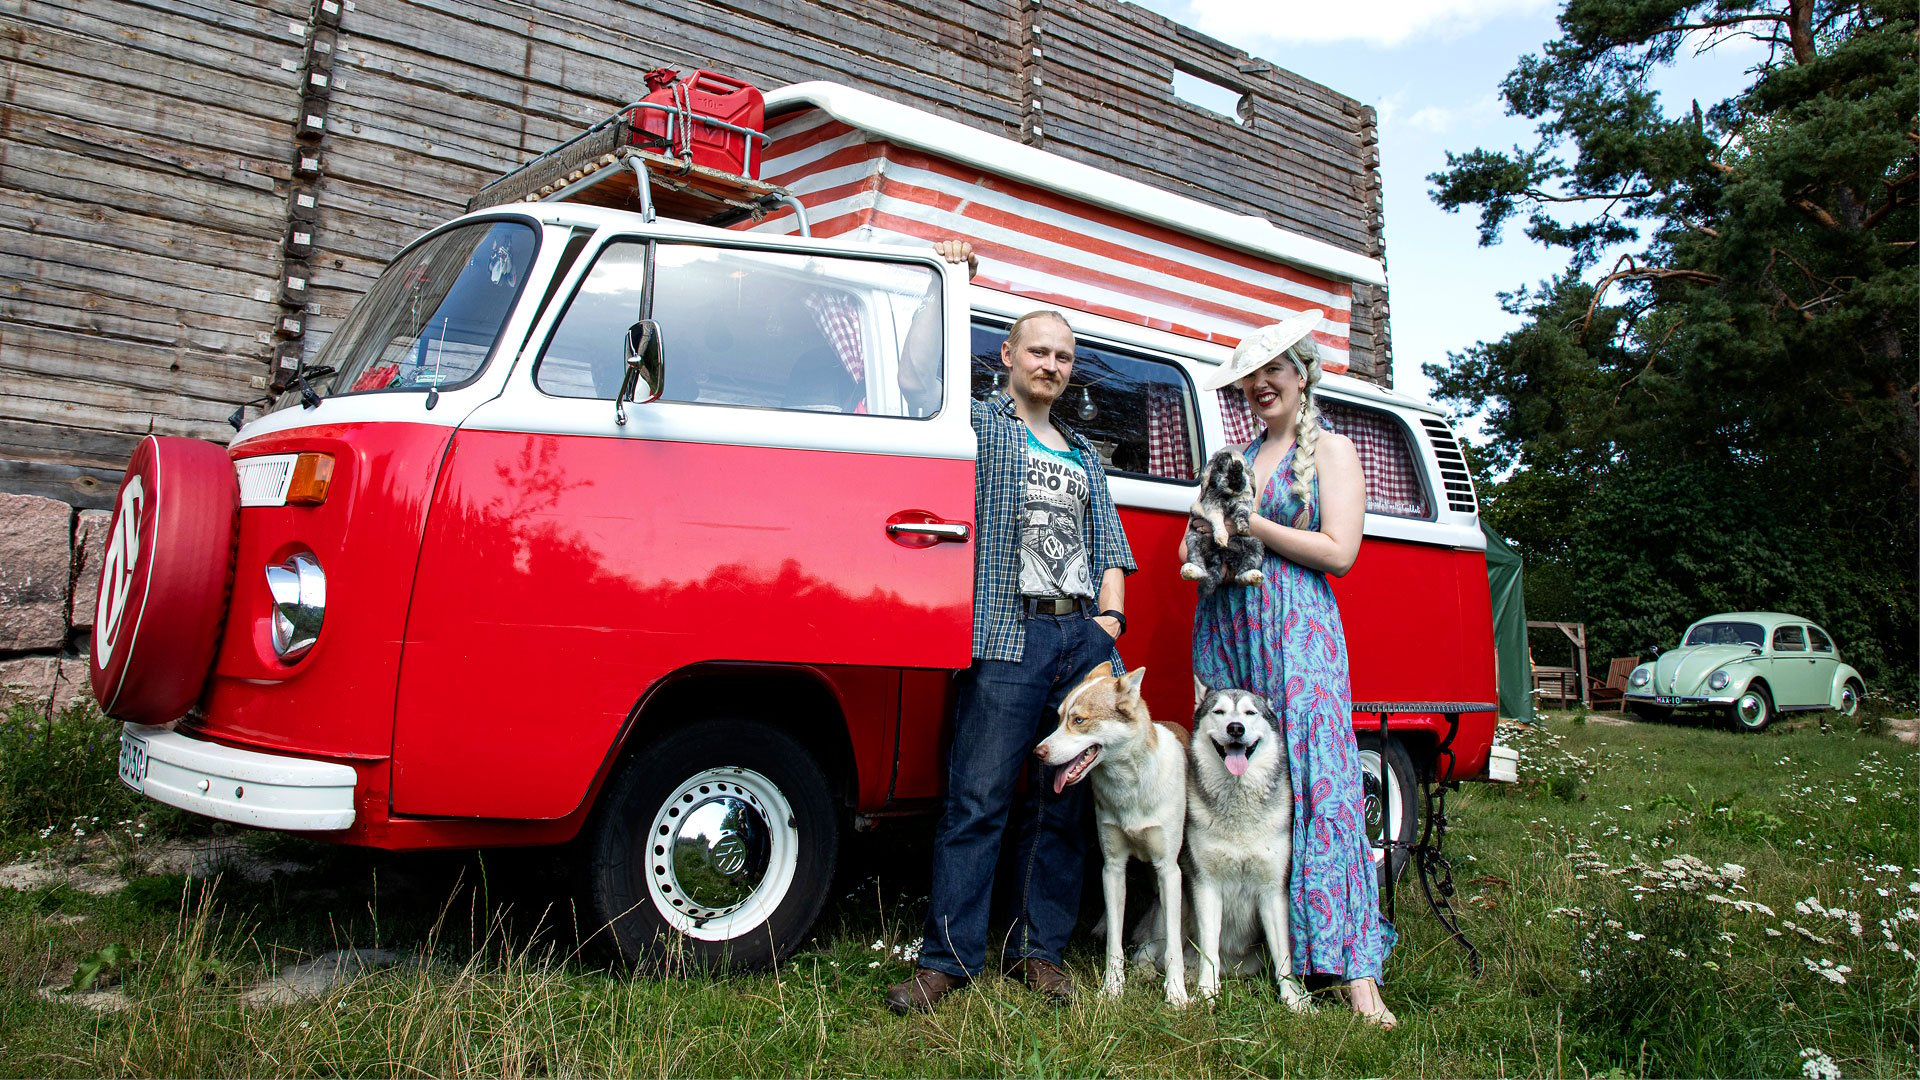 Kuvassa Milla ja Markku Vahtila, heidän siperianhuskynsa Sisu ja Hukka sekä kani Pumba. Taustalla parin punainen pakettiauto ja keskeneräinen talo.